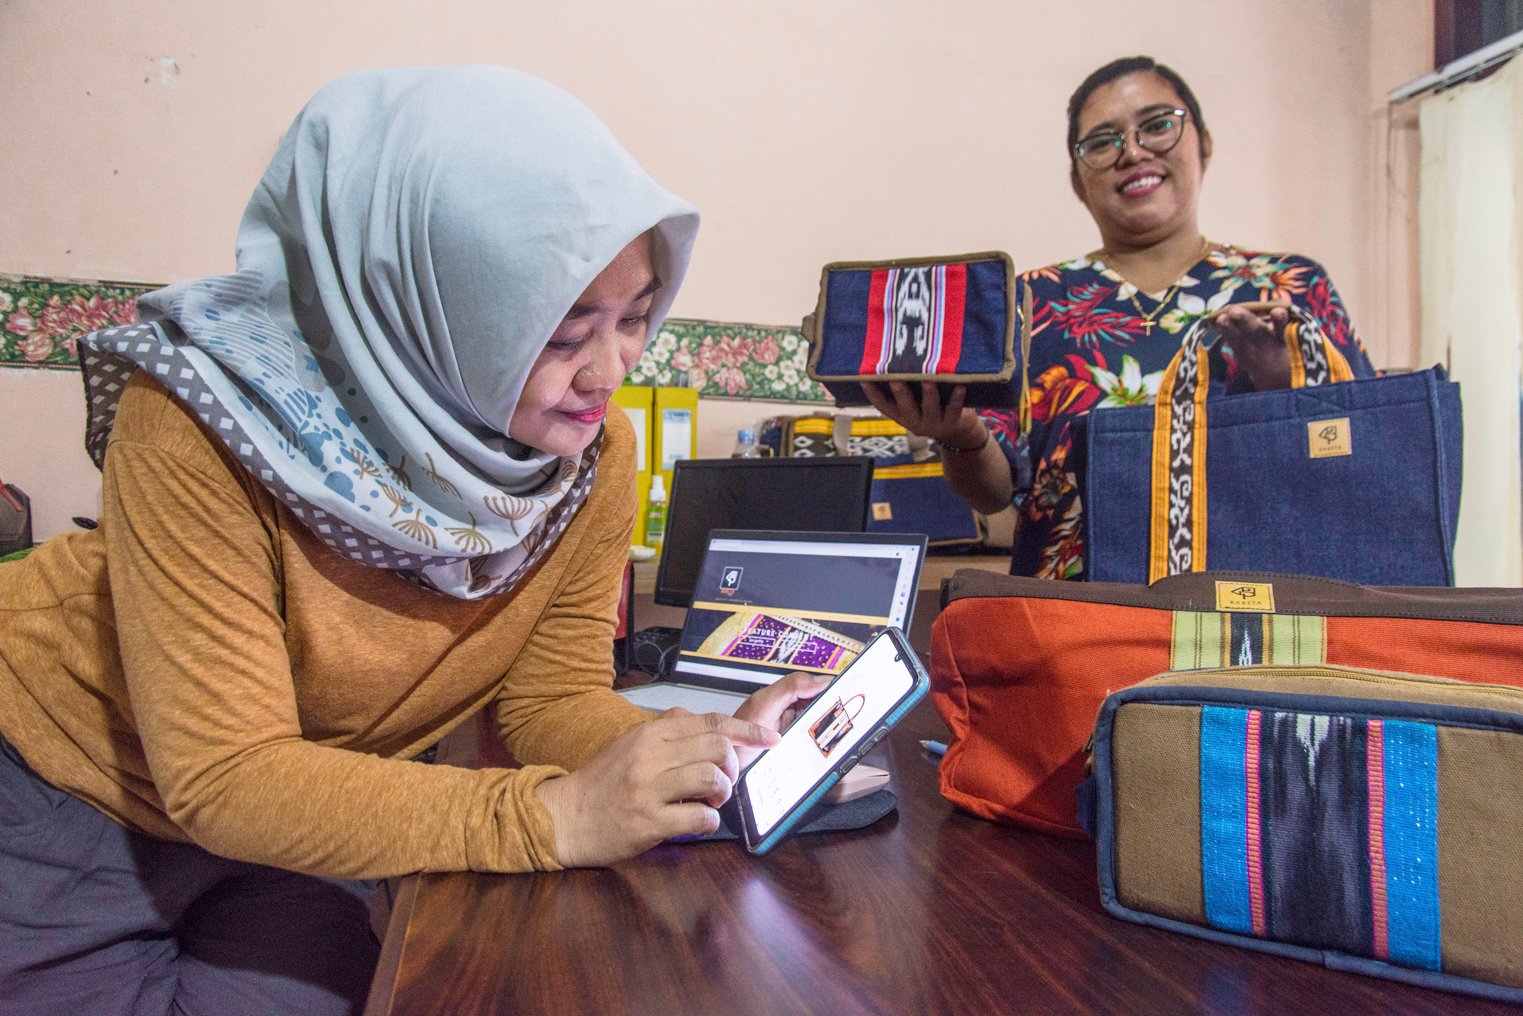 Penenun Kelompok Ralsasam memasarkan produk dompet dan tas tenun ikat Tanimbar menggunakan alat tenun tradisional secara digital di studio Kabeta Craft, Ambon, Maluku. ANTARA FOTO/ FB Anggoro/AW.